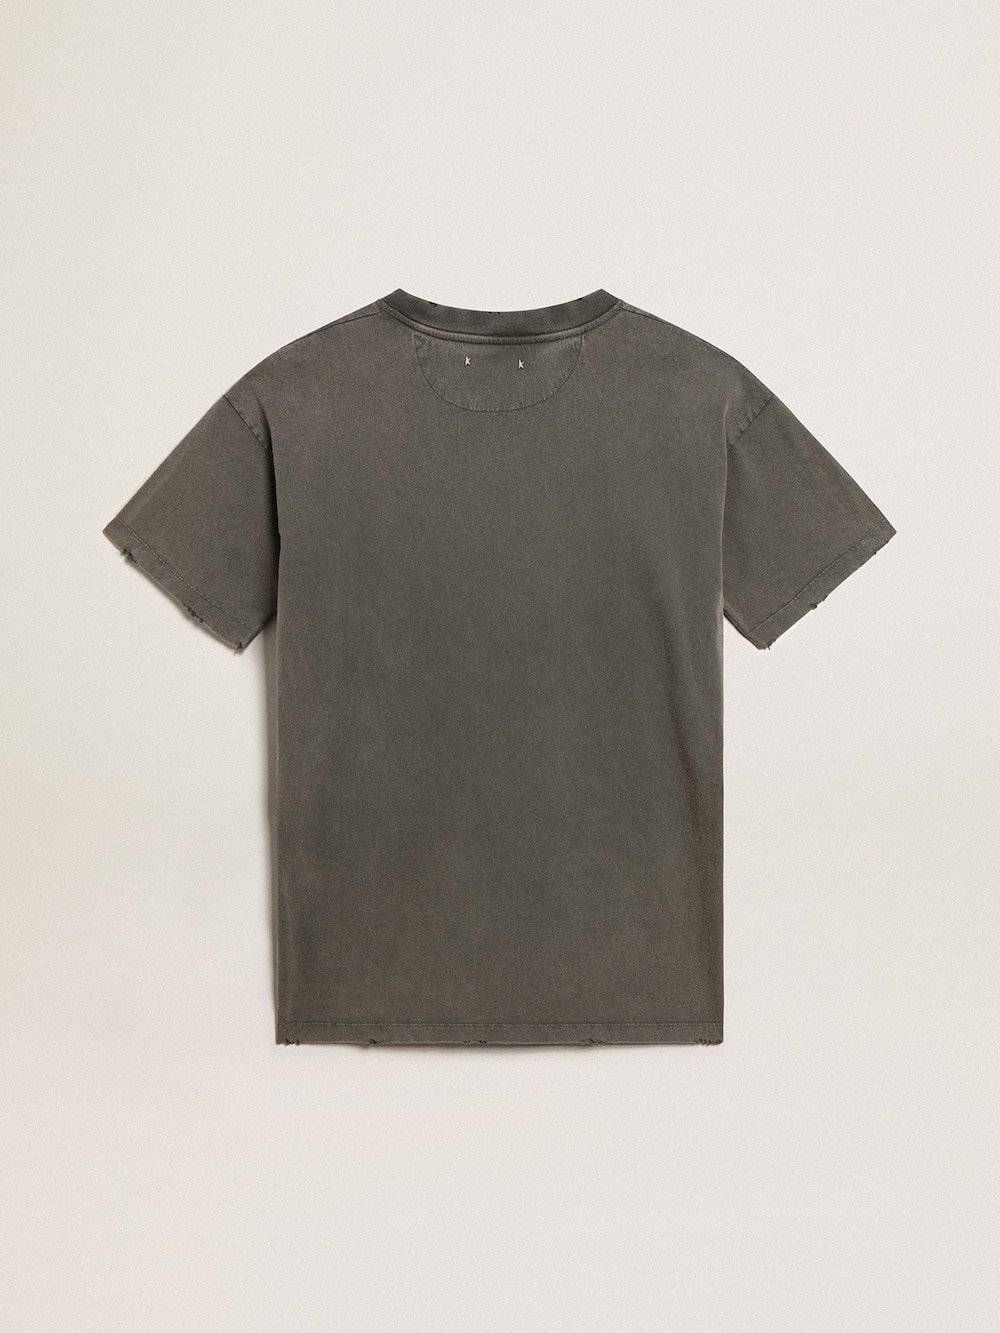 Golden Goose - Vestito T-shirt da donna color grigio dal trattamento distressed in 